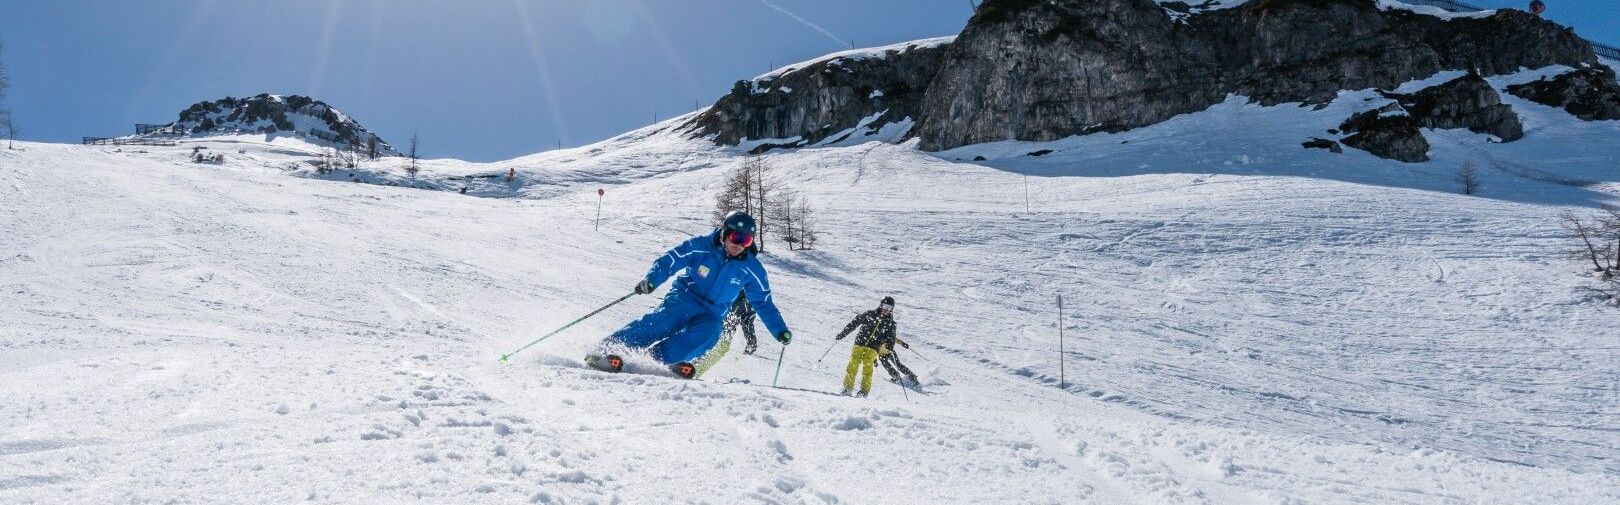 Skikurse für Erwachsene in Flachau - Für Anfänger bis Profis